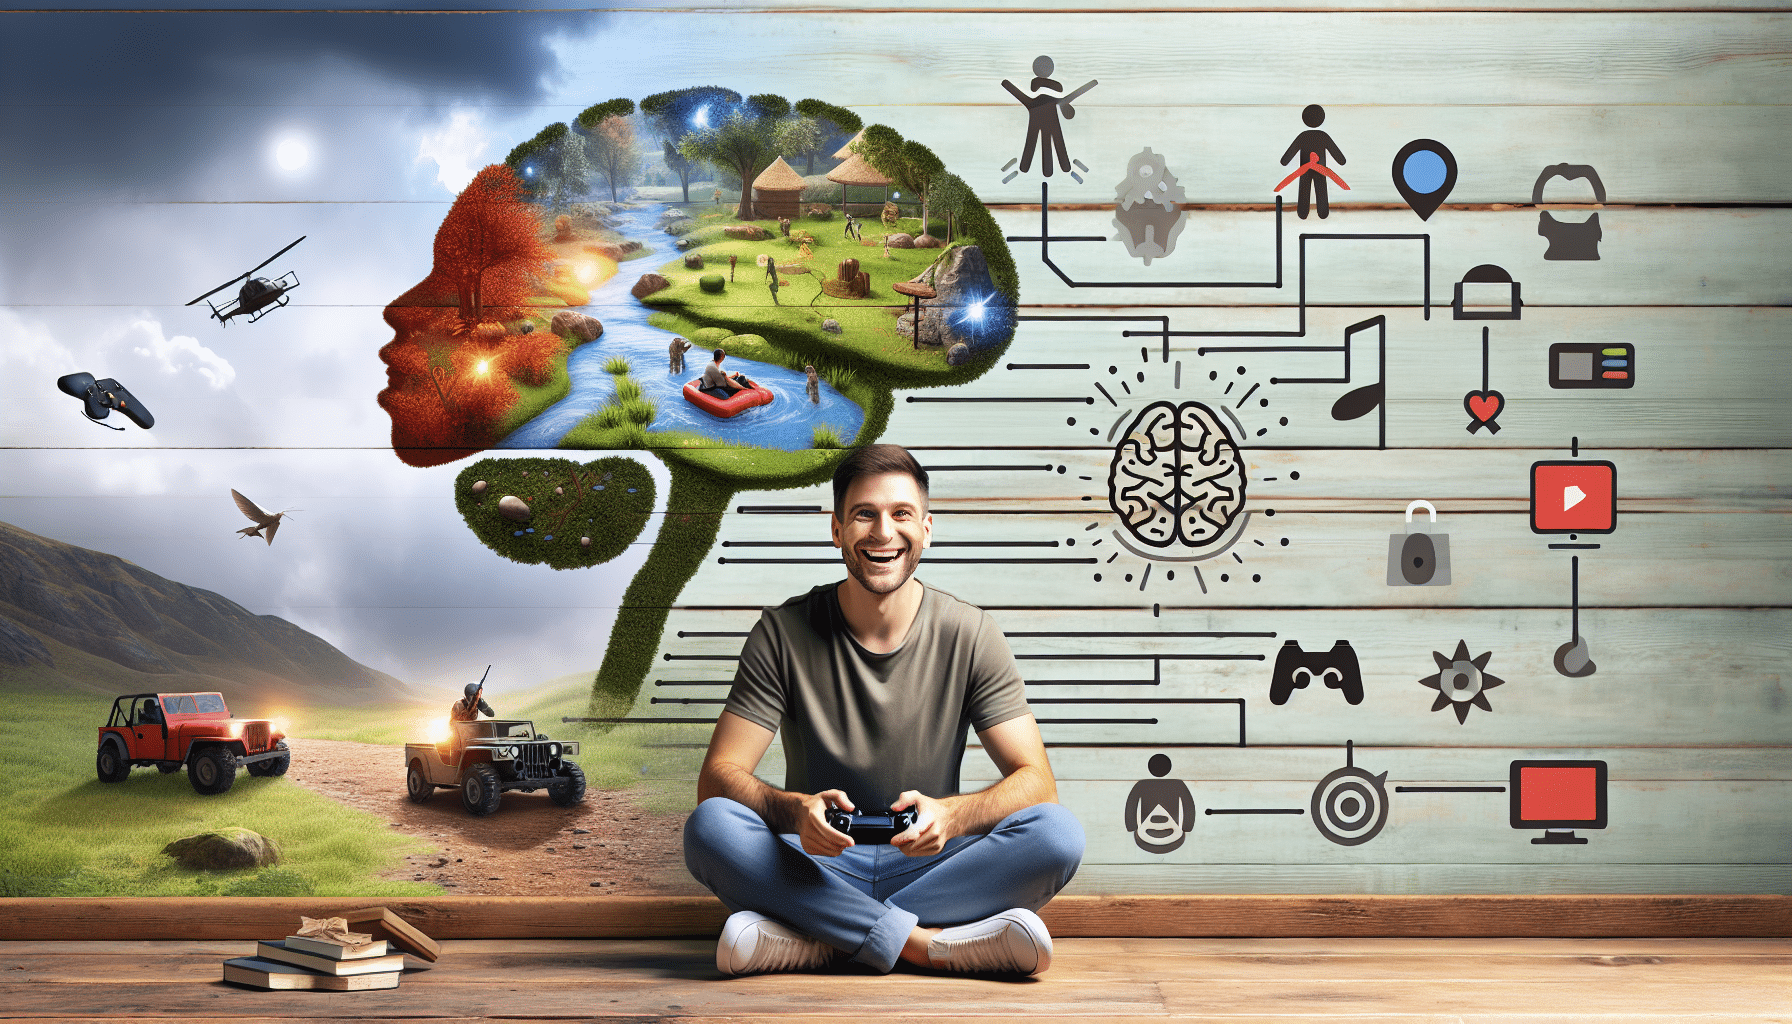 découvrez comment les jeux vidéo peuvent avoir un impact positif sur votre santé mentale et améliorer votre bien-être. les bienfaits des jeux vidéo sur la santé mentale et le bien-être.